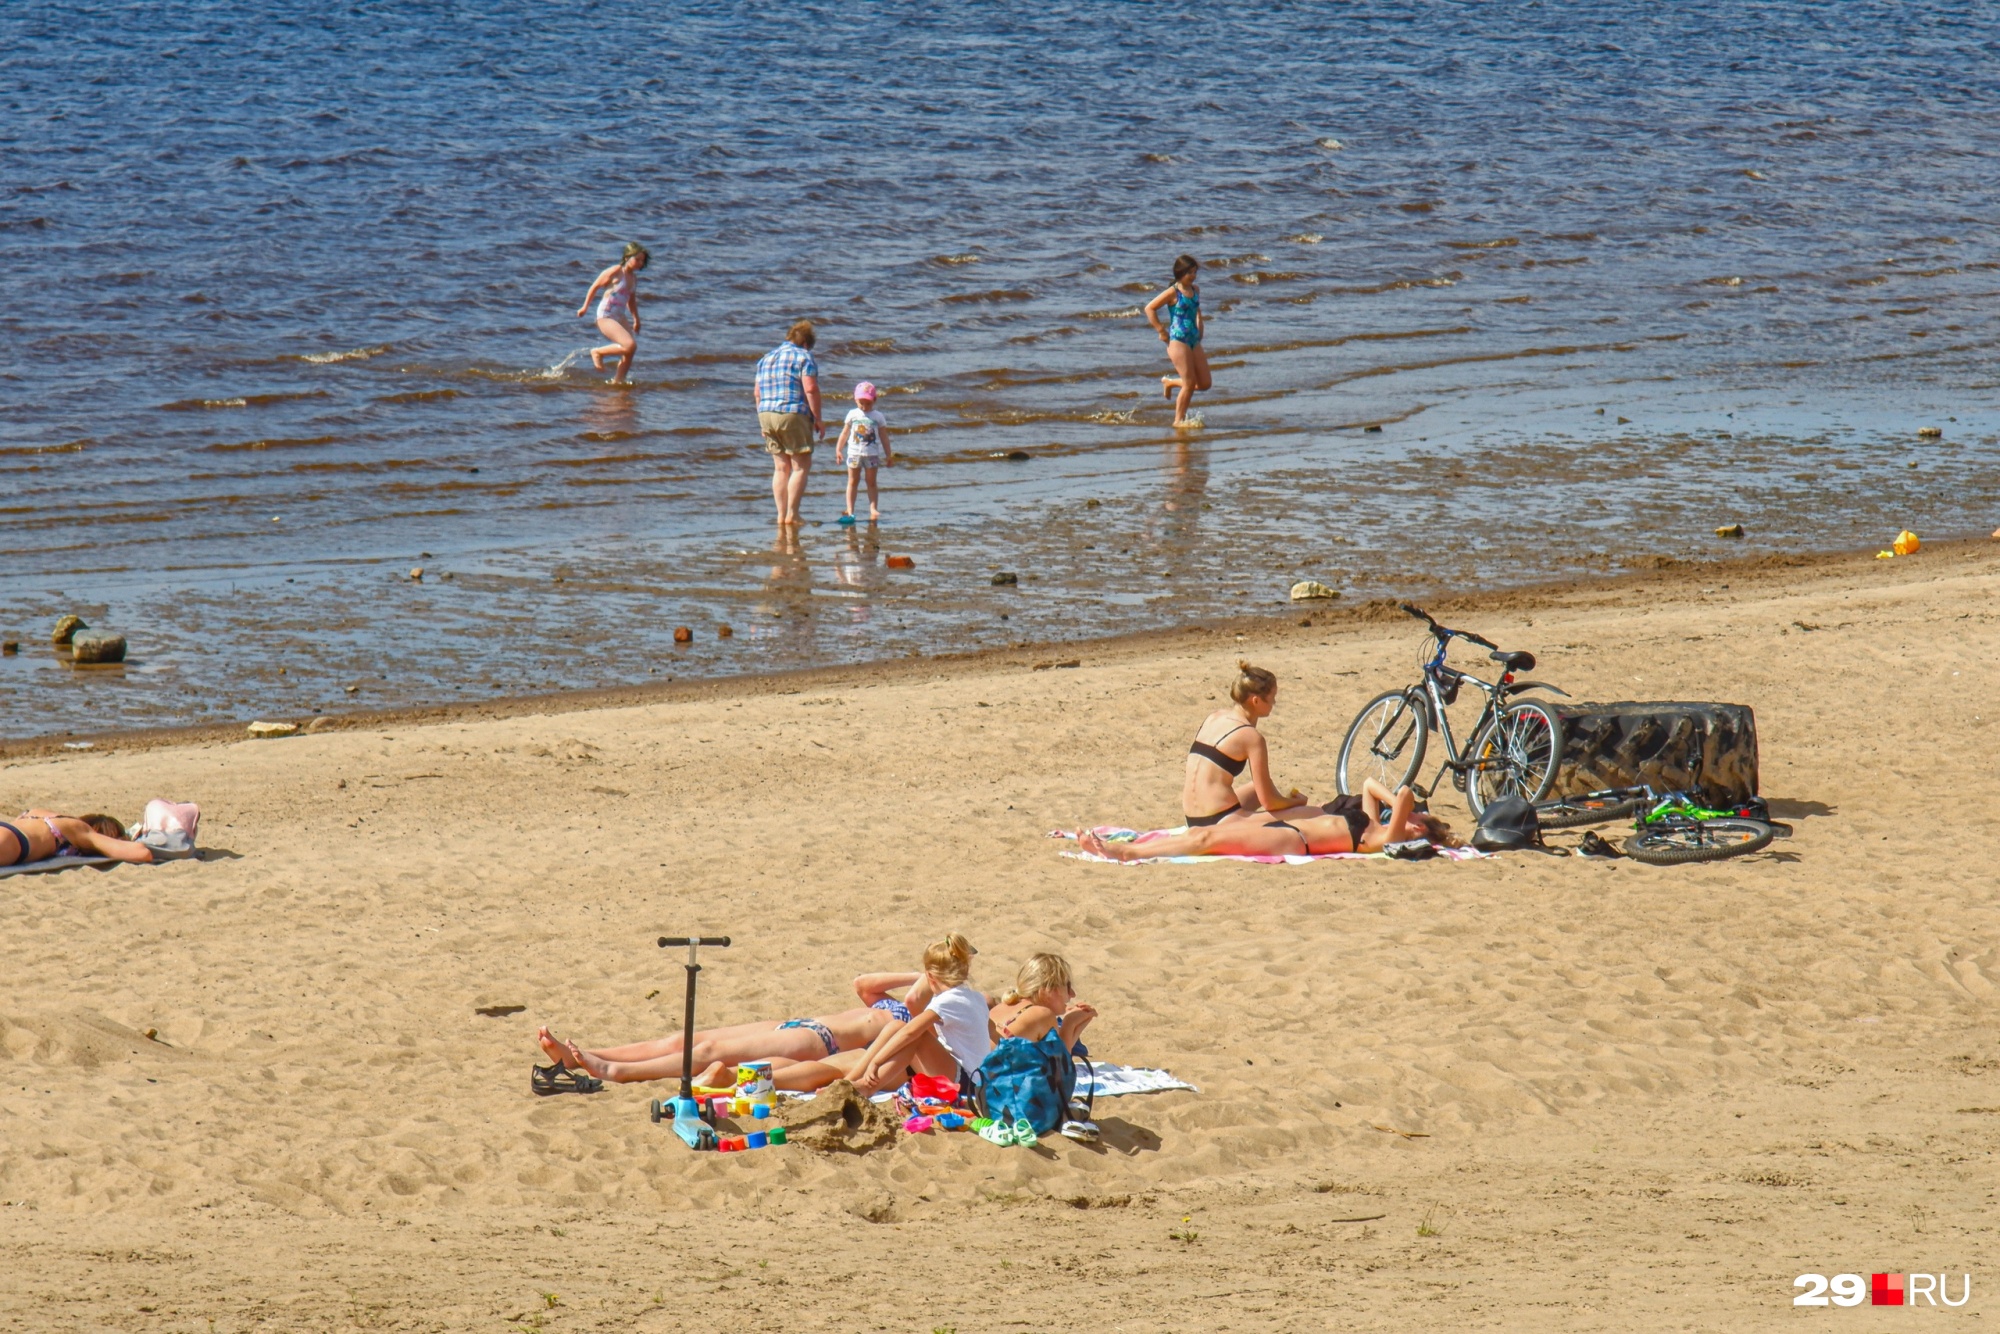 Благоустройство пляжа: покрышку от грузовика можно использовать как скамейку или подпорку для велосипеда